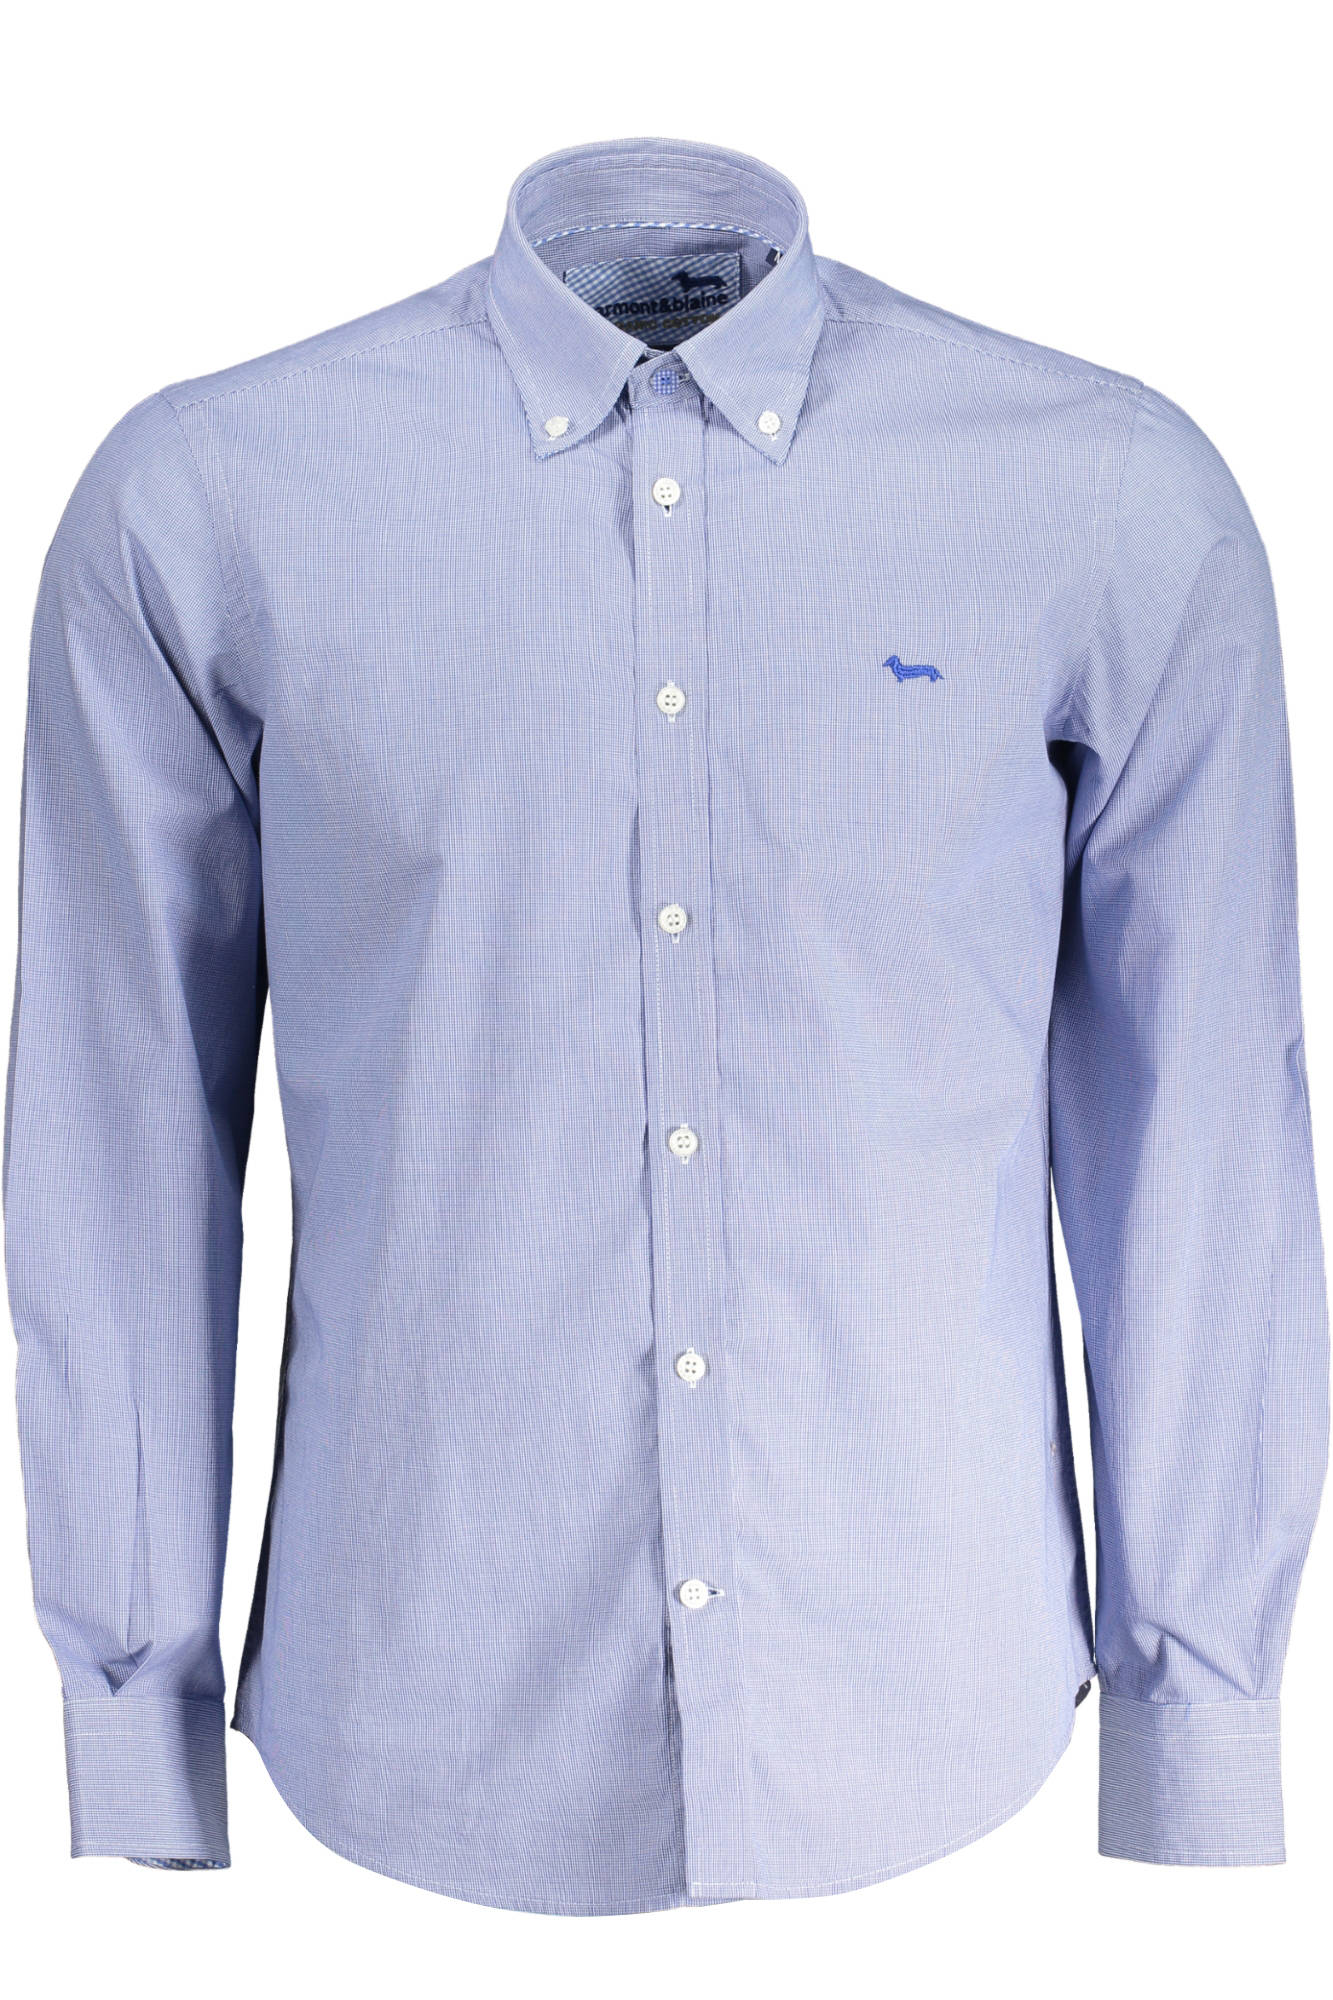 Harmont & Blaine Blue Cotton Shirt